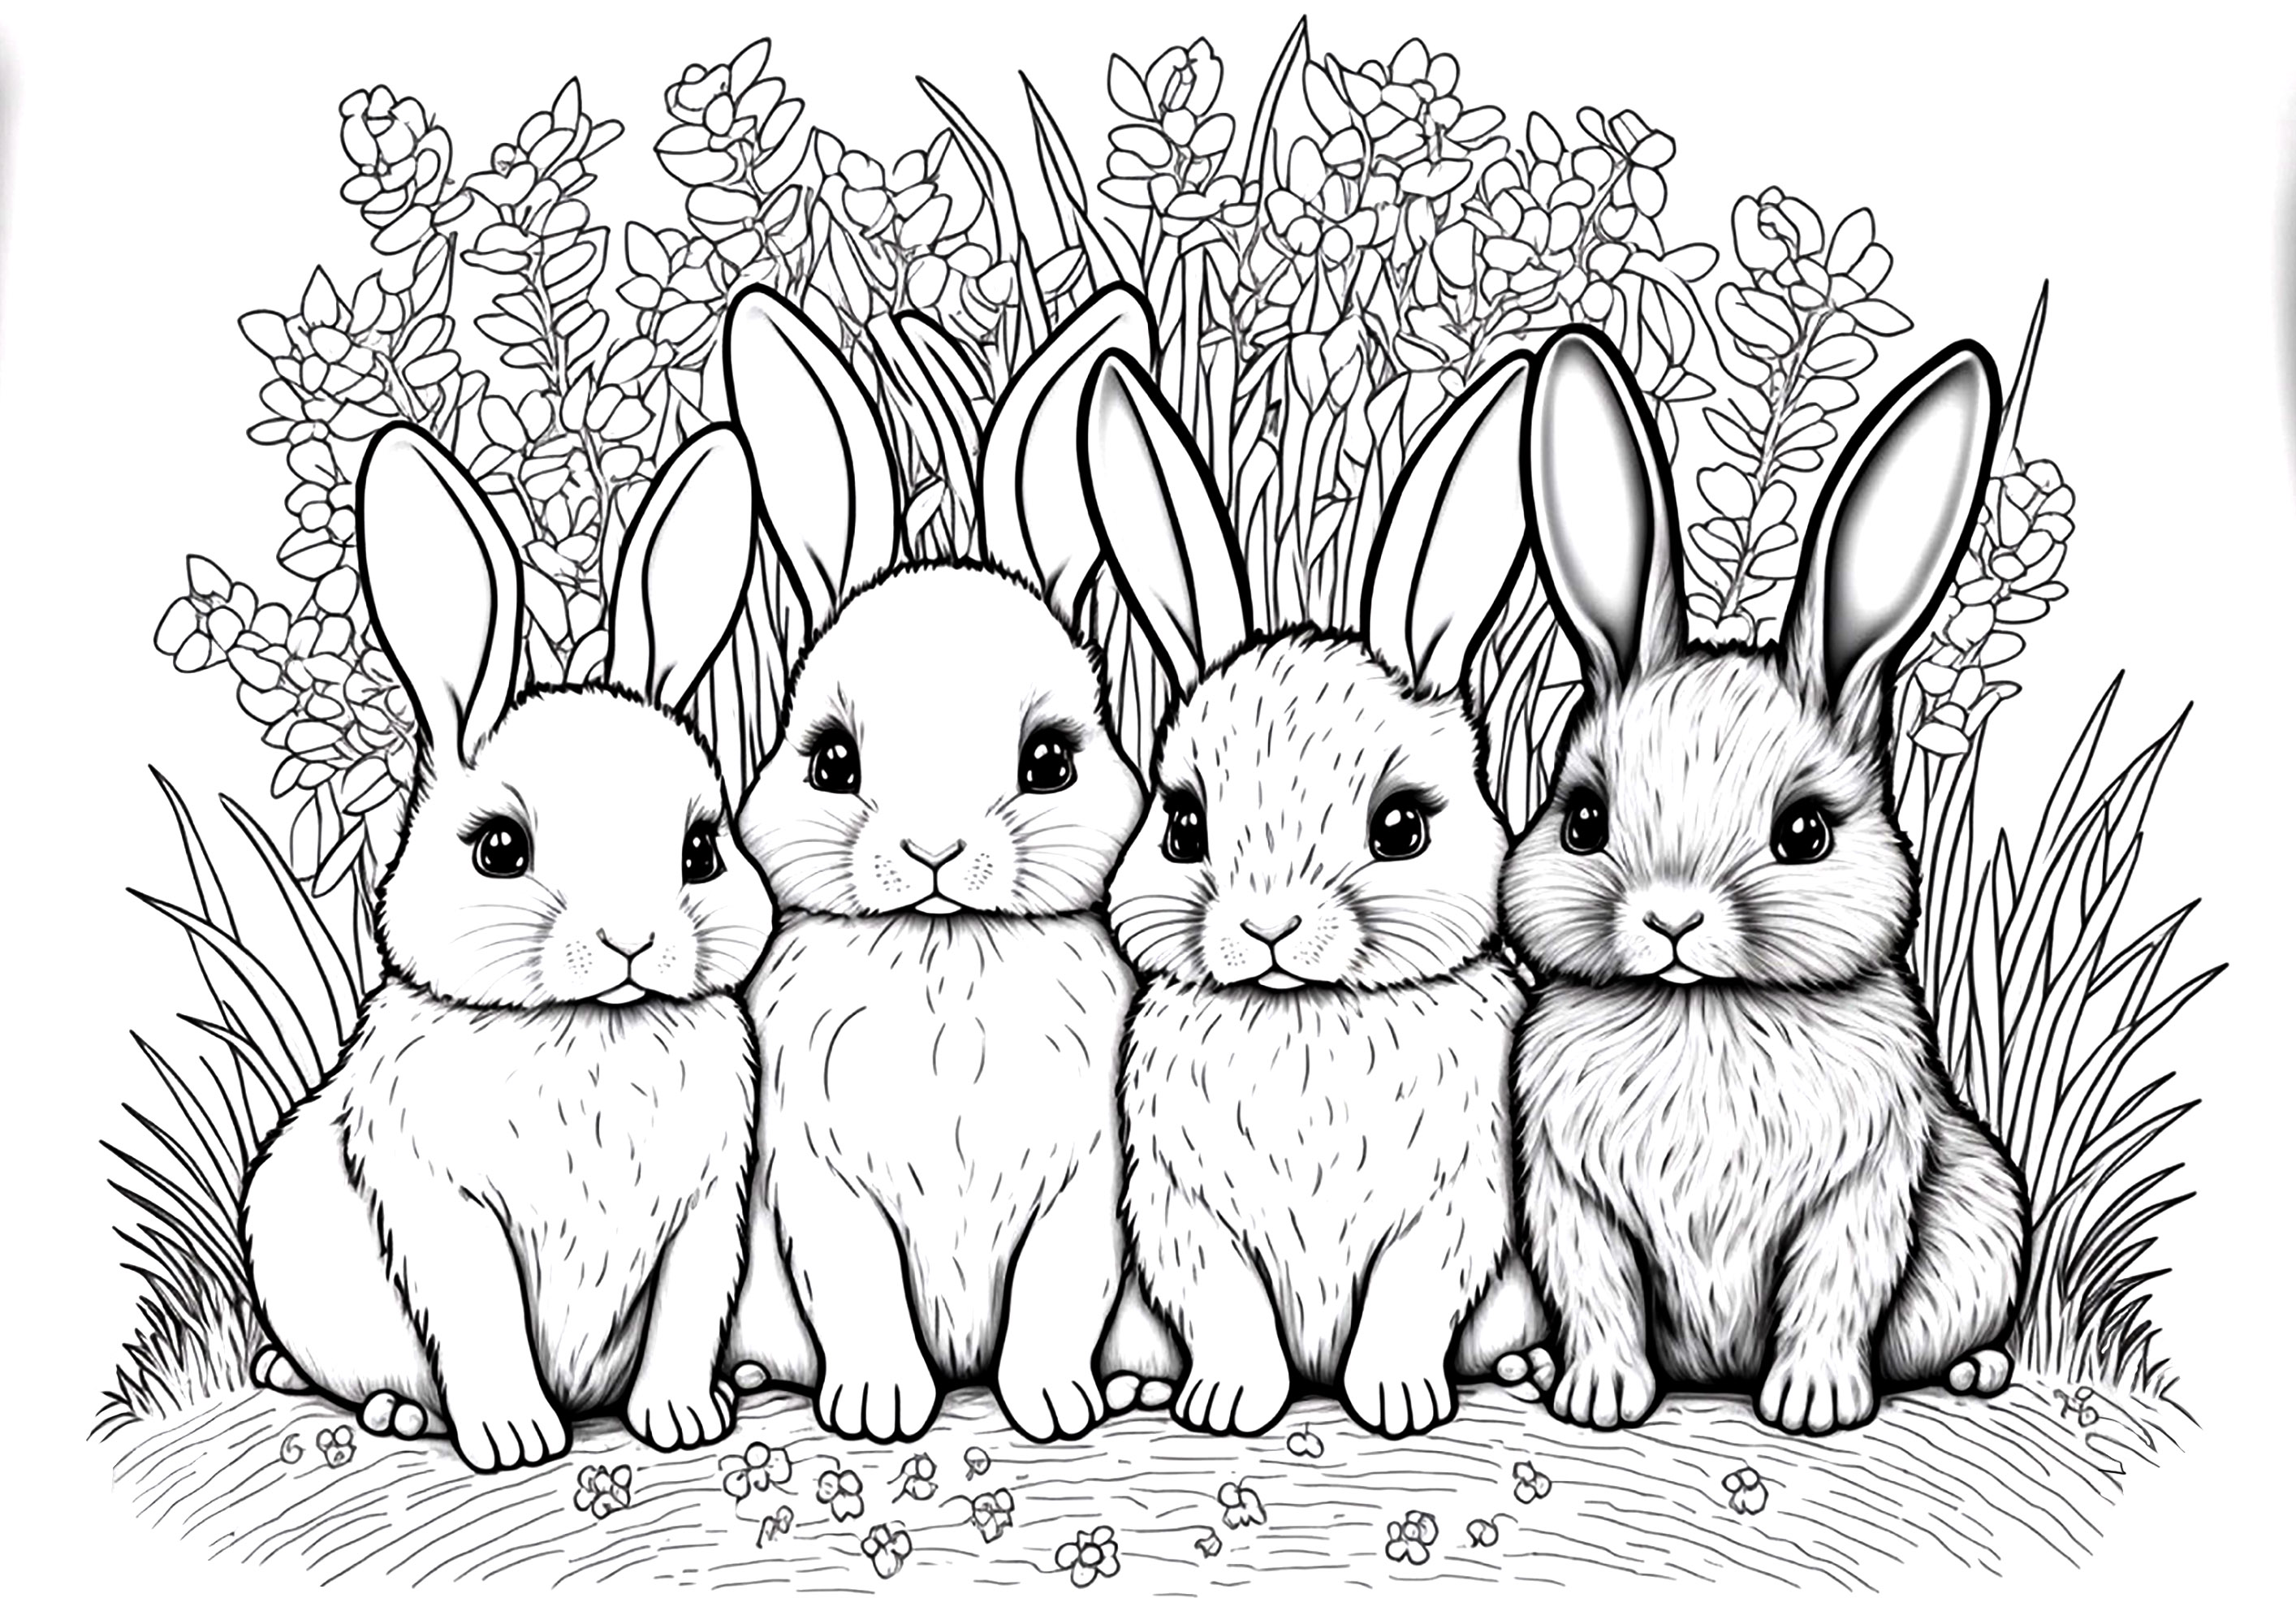 Cuatro bonitos Conejos, y un fondo vegetal